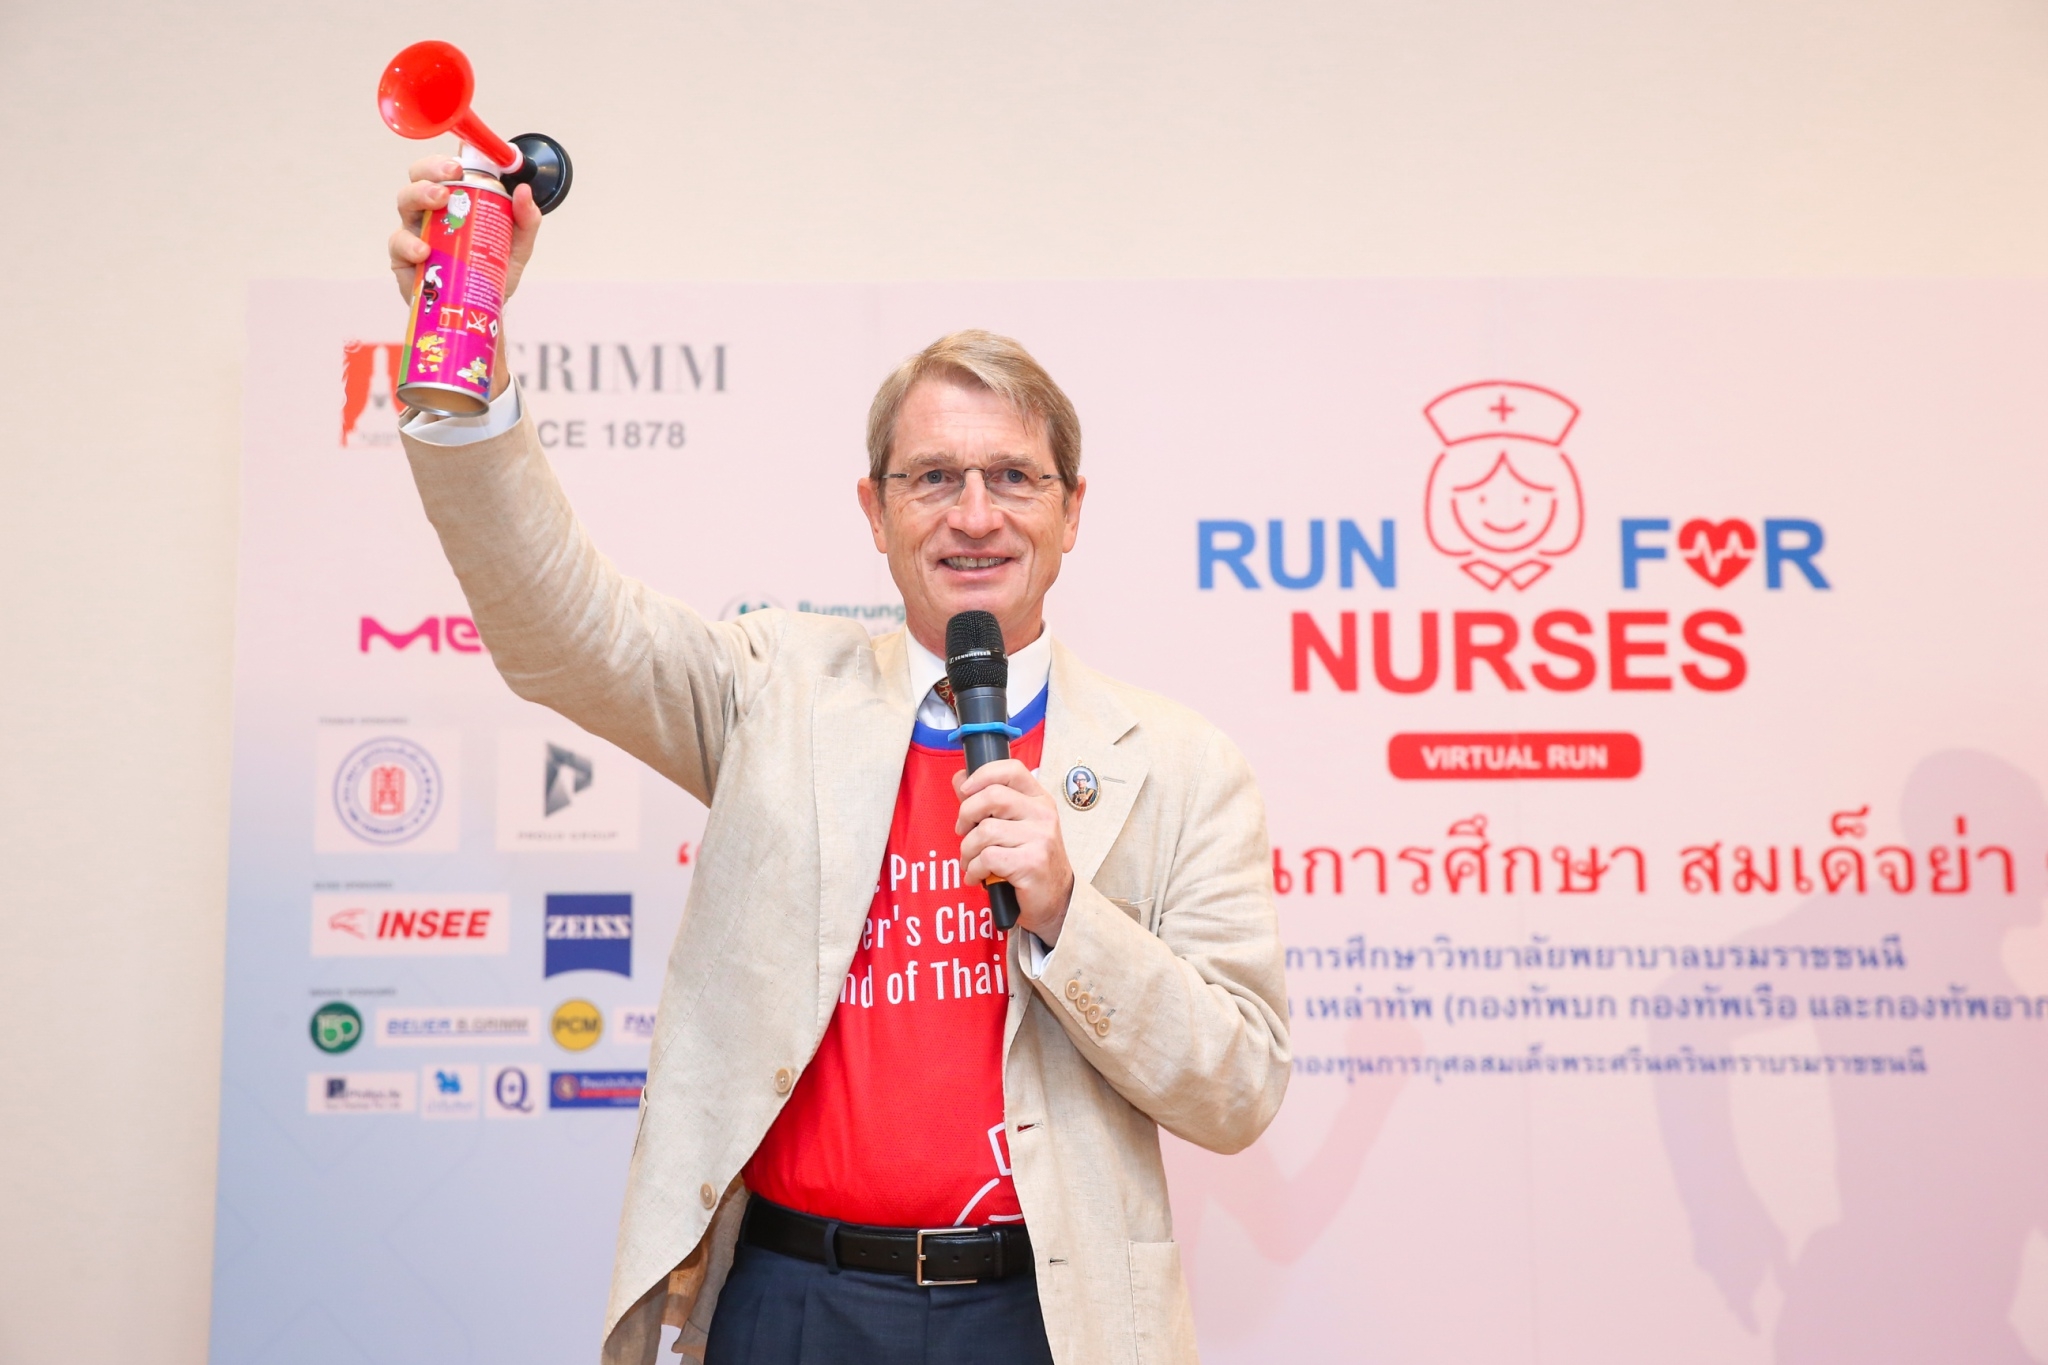 มูลนิธิกองทุนการกุศลสมเด็จพระศรีนครินทราฯ ร่วมกับ บี.กริม จัดเดิน-วิ่ง Run for Nurses 2020 Virtual Run สมทบทุน ทุนการศึกษาสมเด็จย่า